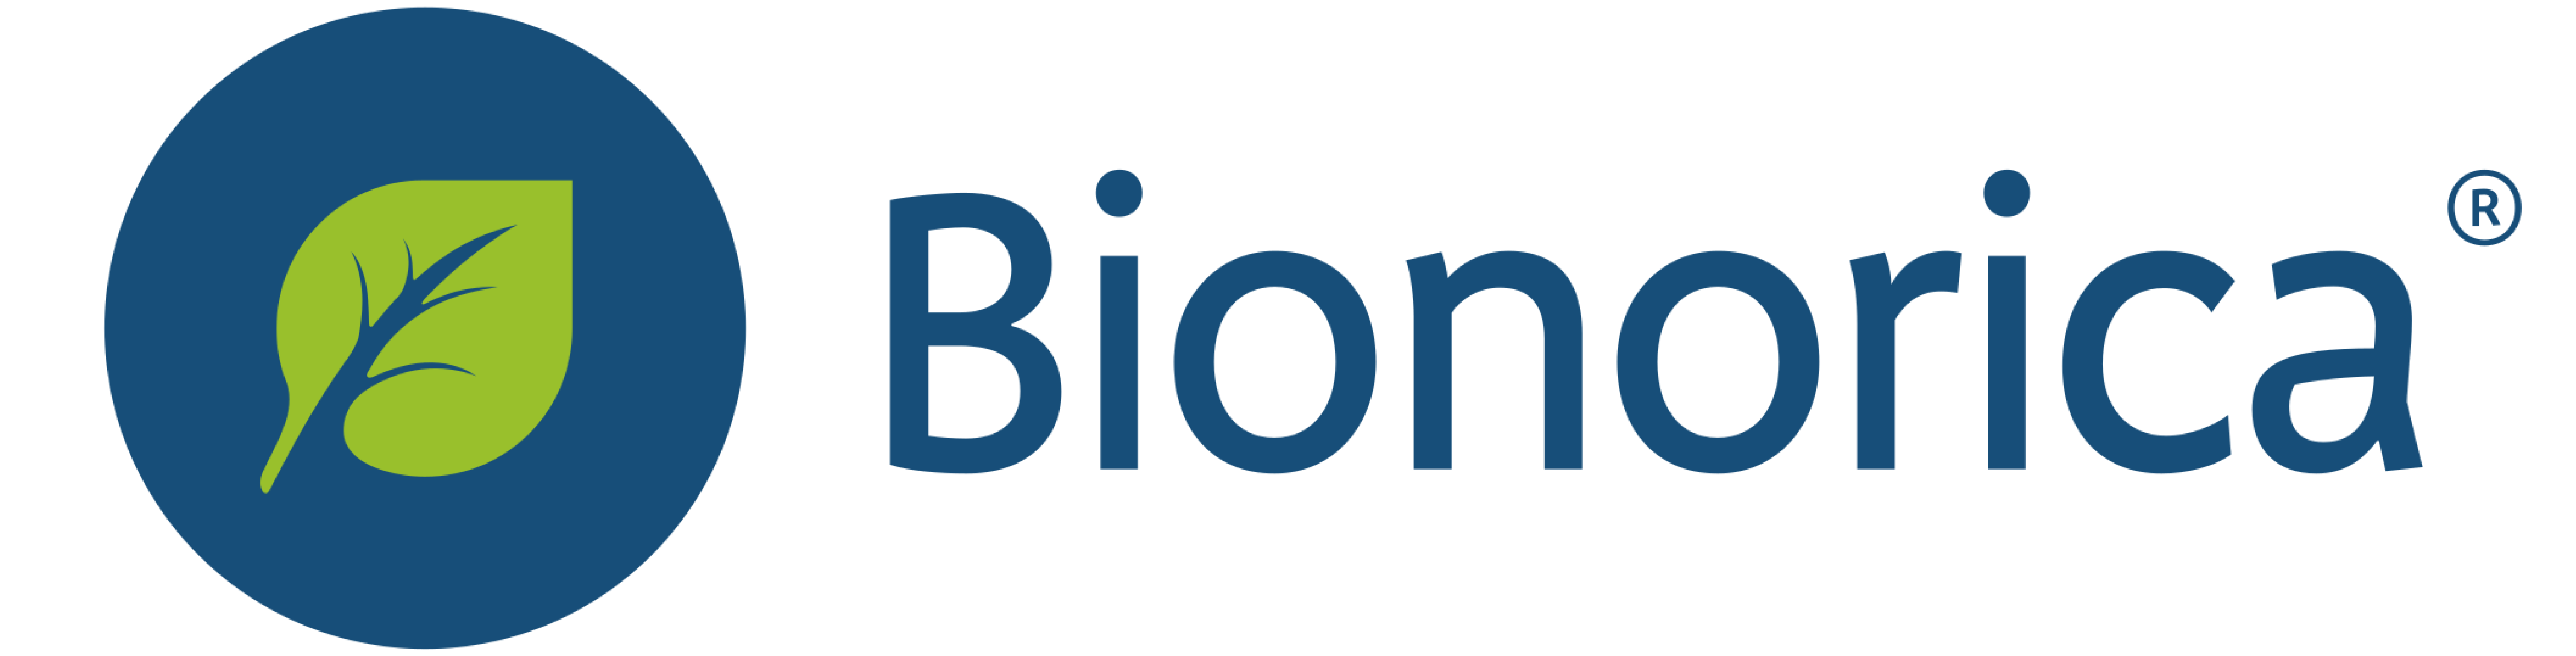 de4.0-bionorica's provider logo